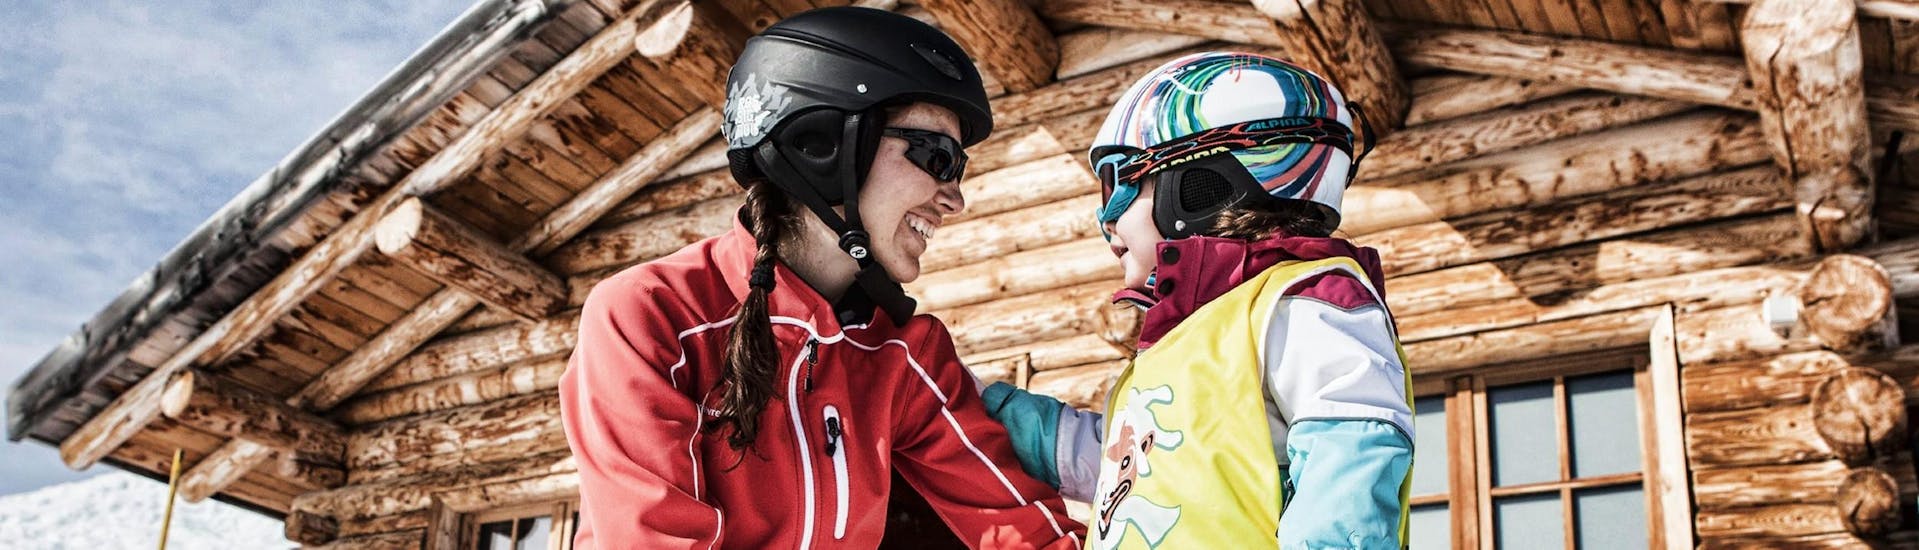 Een skileraar helpt een klein kind met zijn eerste ski-ervaring tijdens de privéskilessen voor kinderen van alle leeftijden met Skischule Schruns.